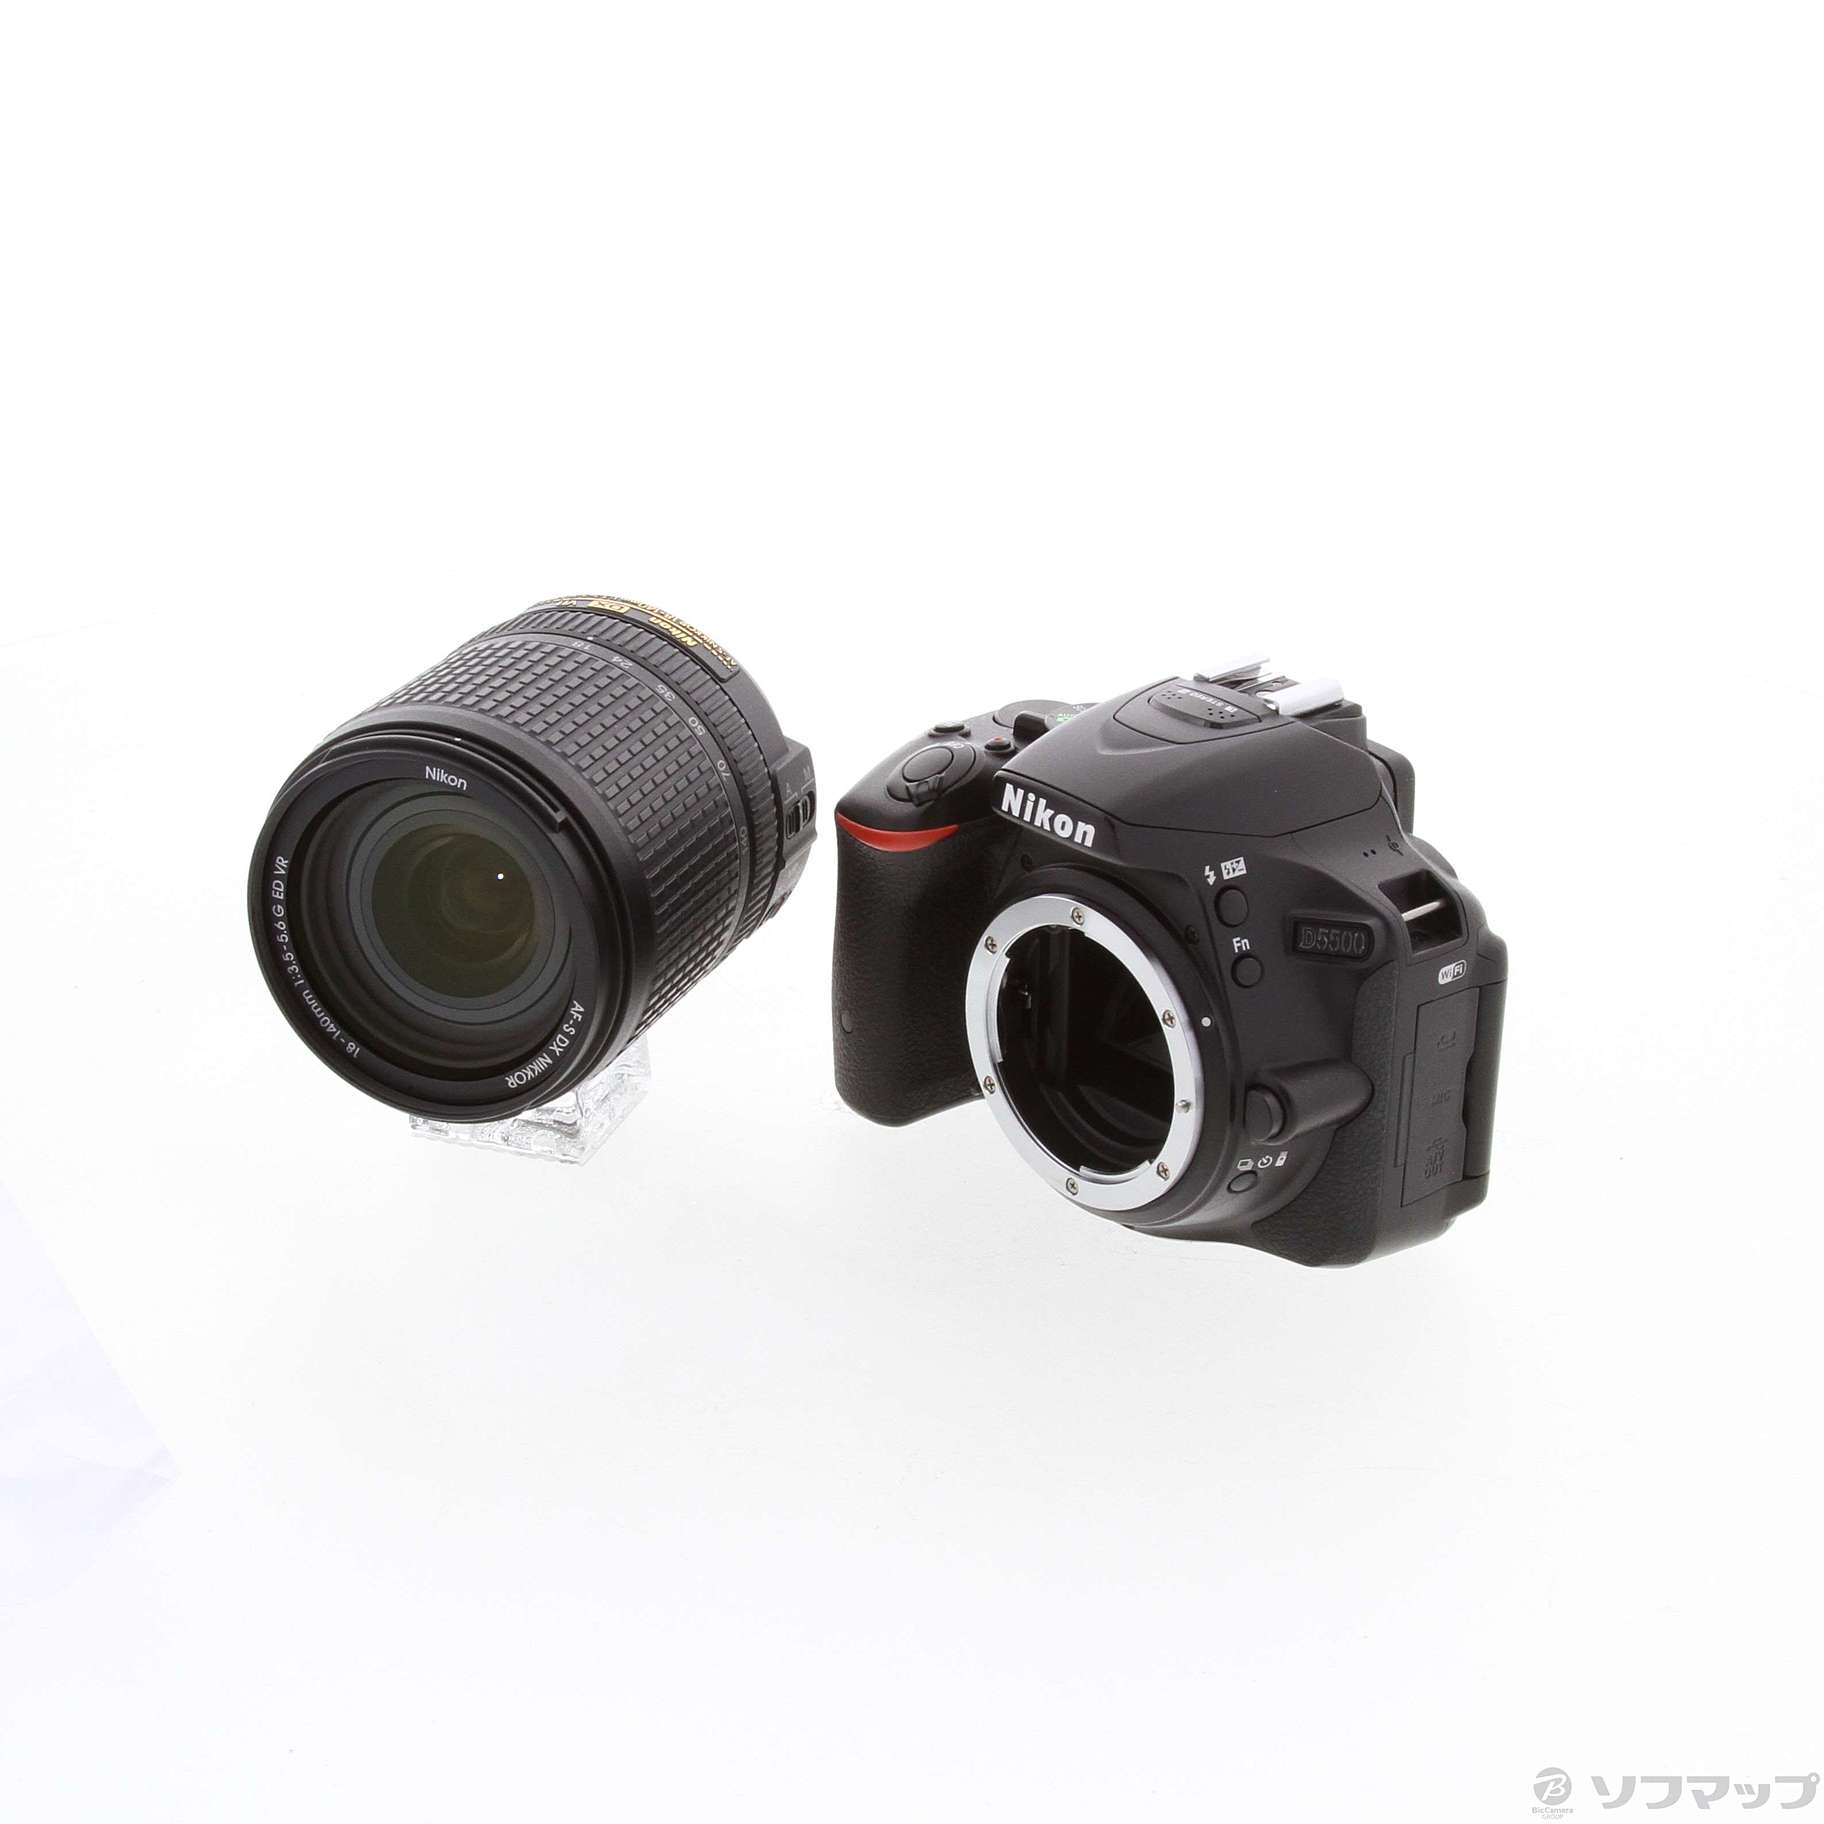 Nikon ニコン D5500 18-140VR レンズキット ブラック一眼レフ